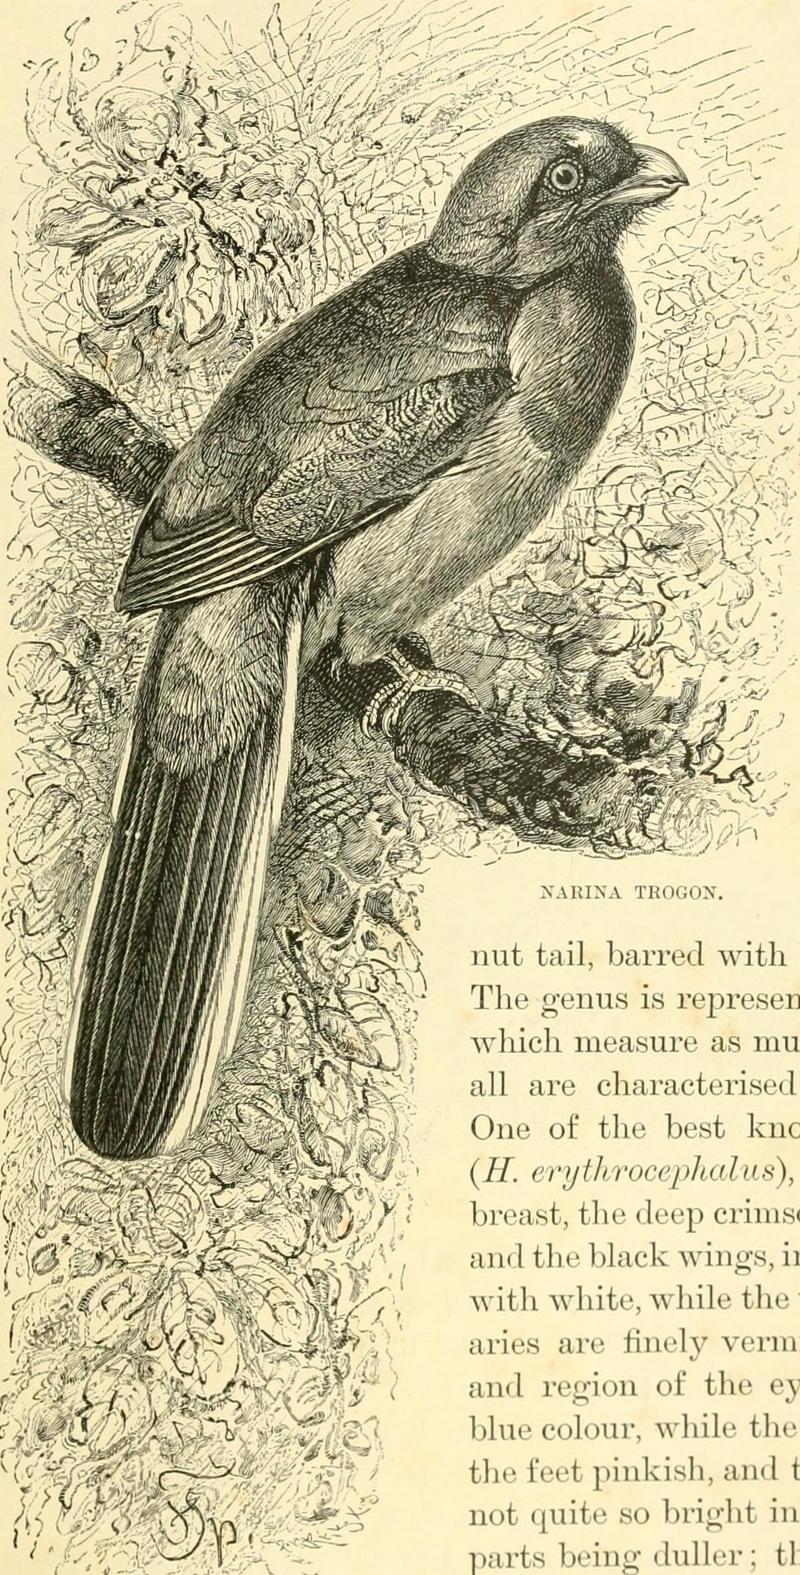 The royal natural history (1893) (14781609851) - Narina trogon (Apaloderma narina).jpg